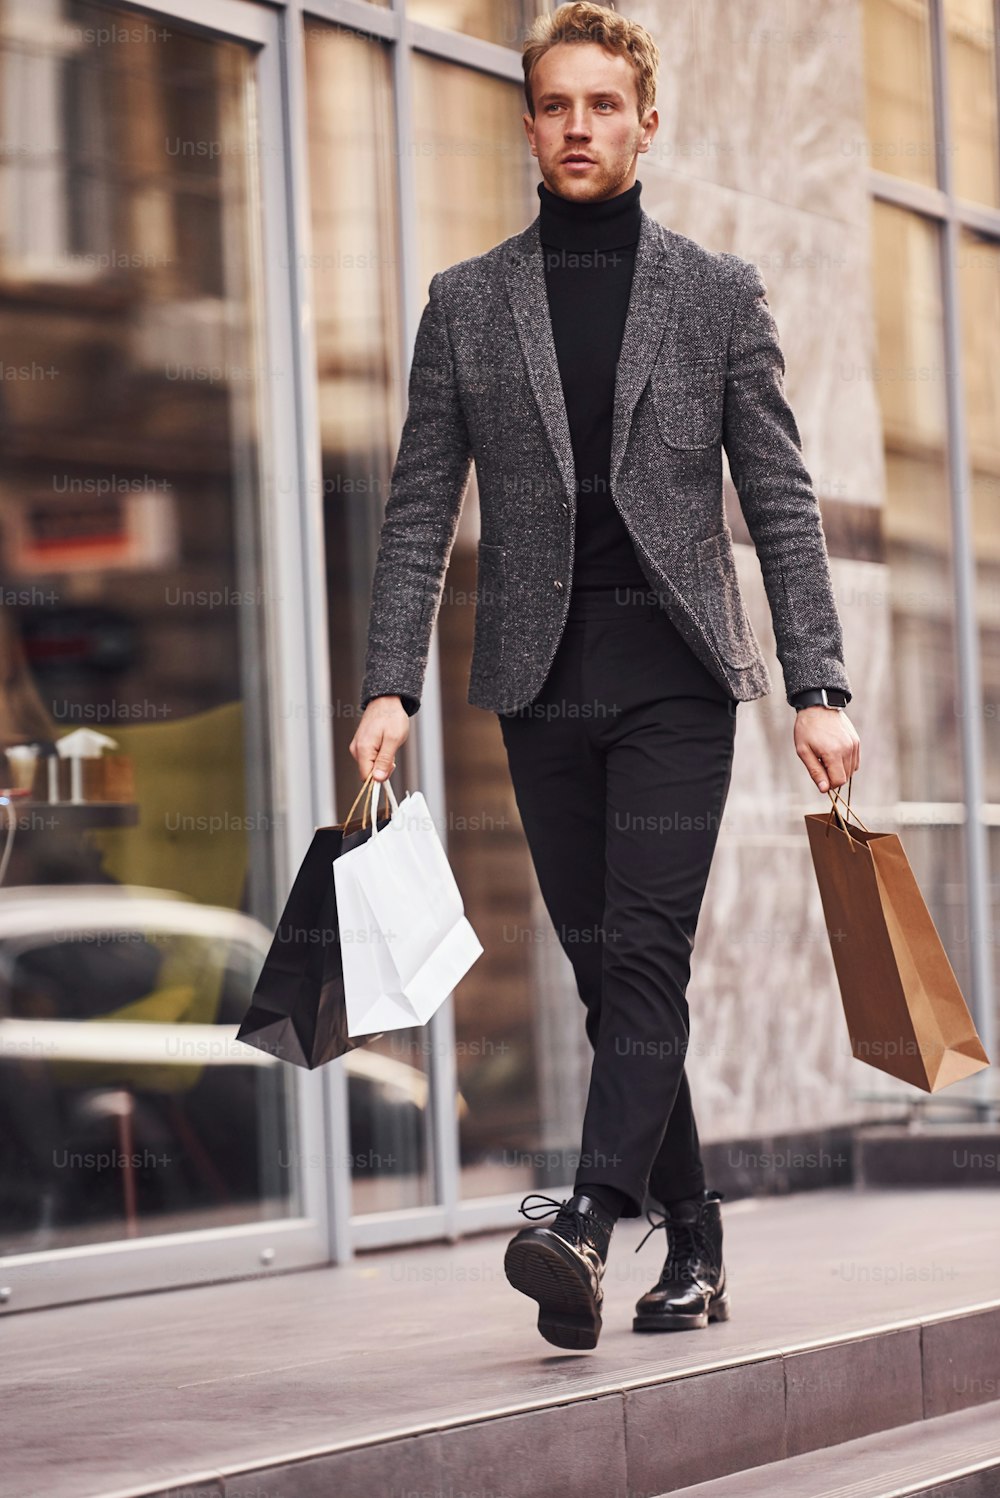 エレガントなフォーマルウェアを着て、ショッピングパッケージを持った男性が、近代的な建物を背景に外にいます。